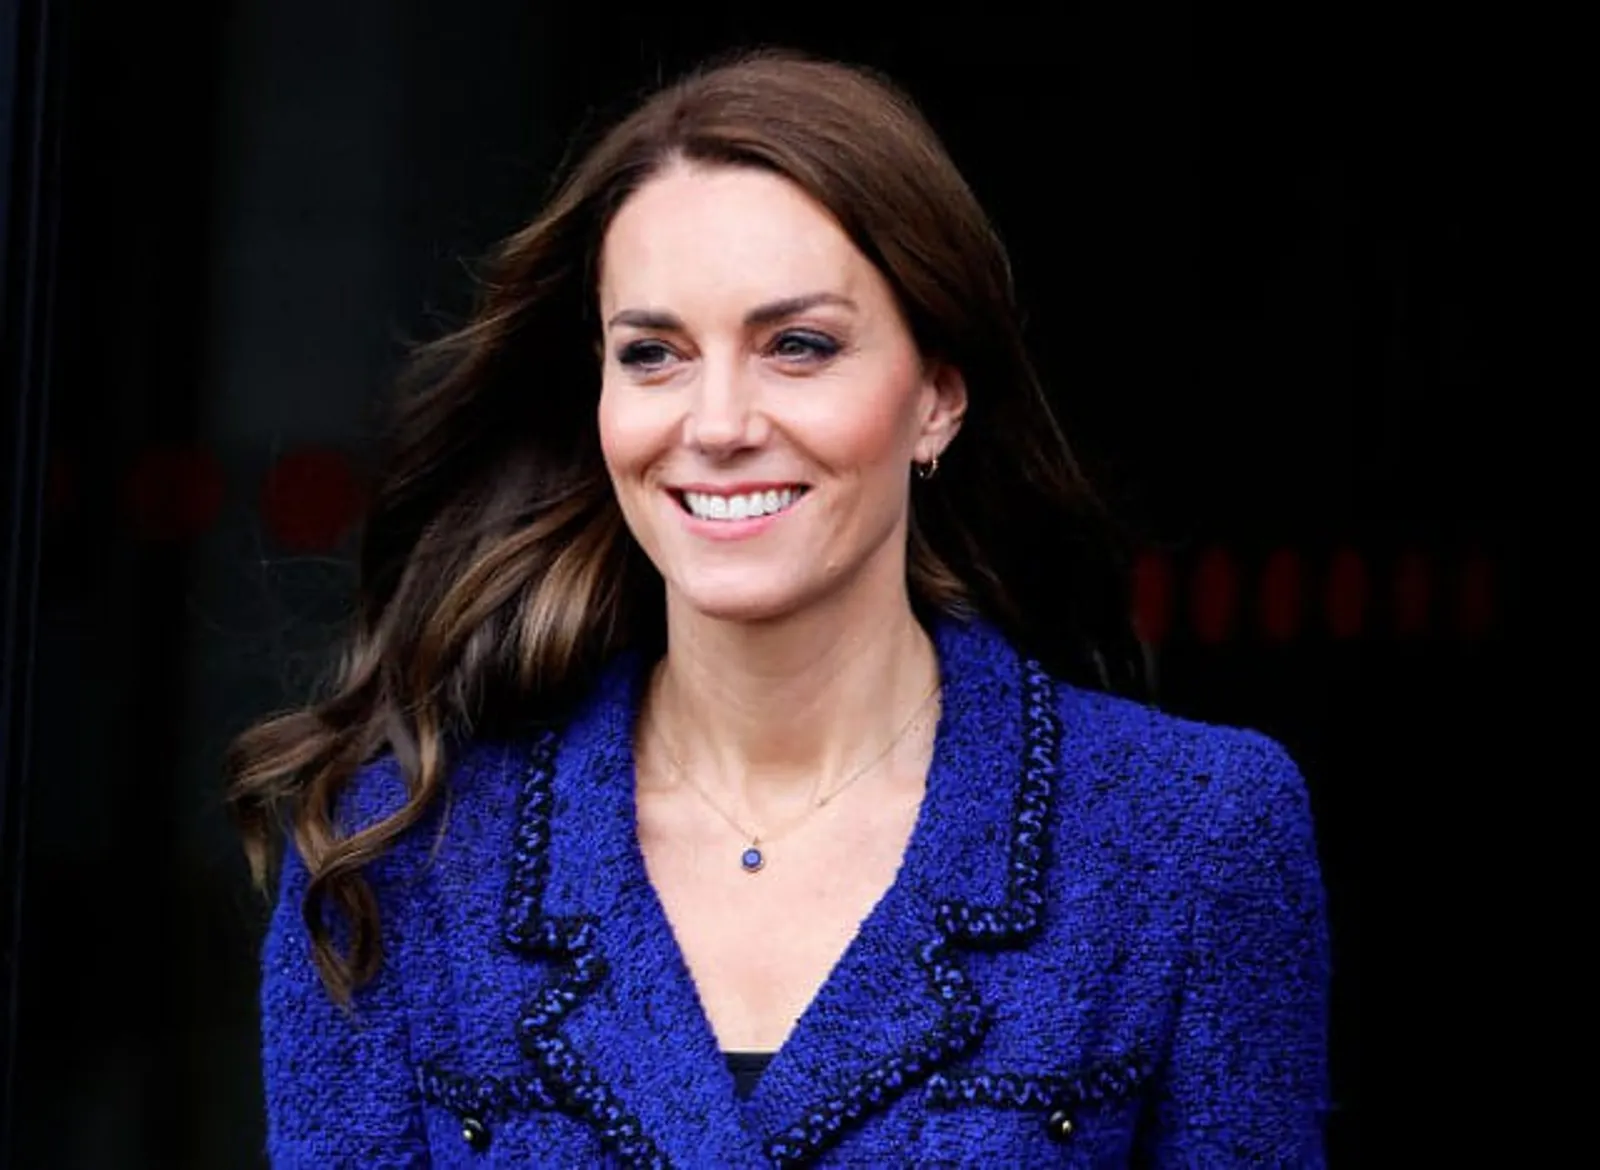 Pasca Operasi & Foto Diedit, Ke Mana Kate Middleton? Ini Kronologinya